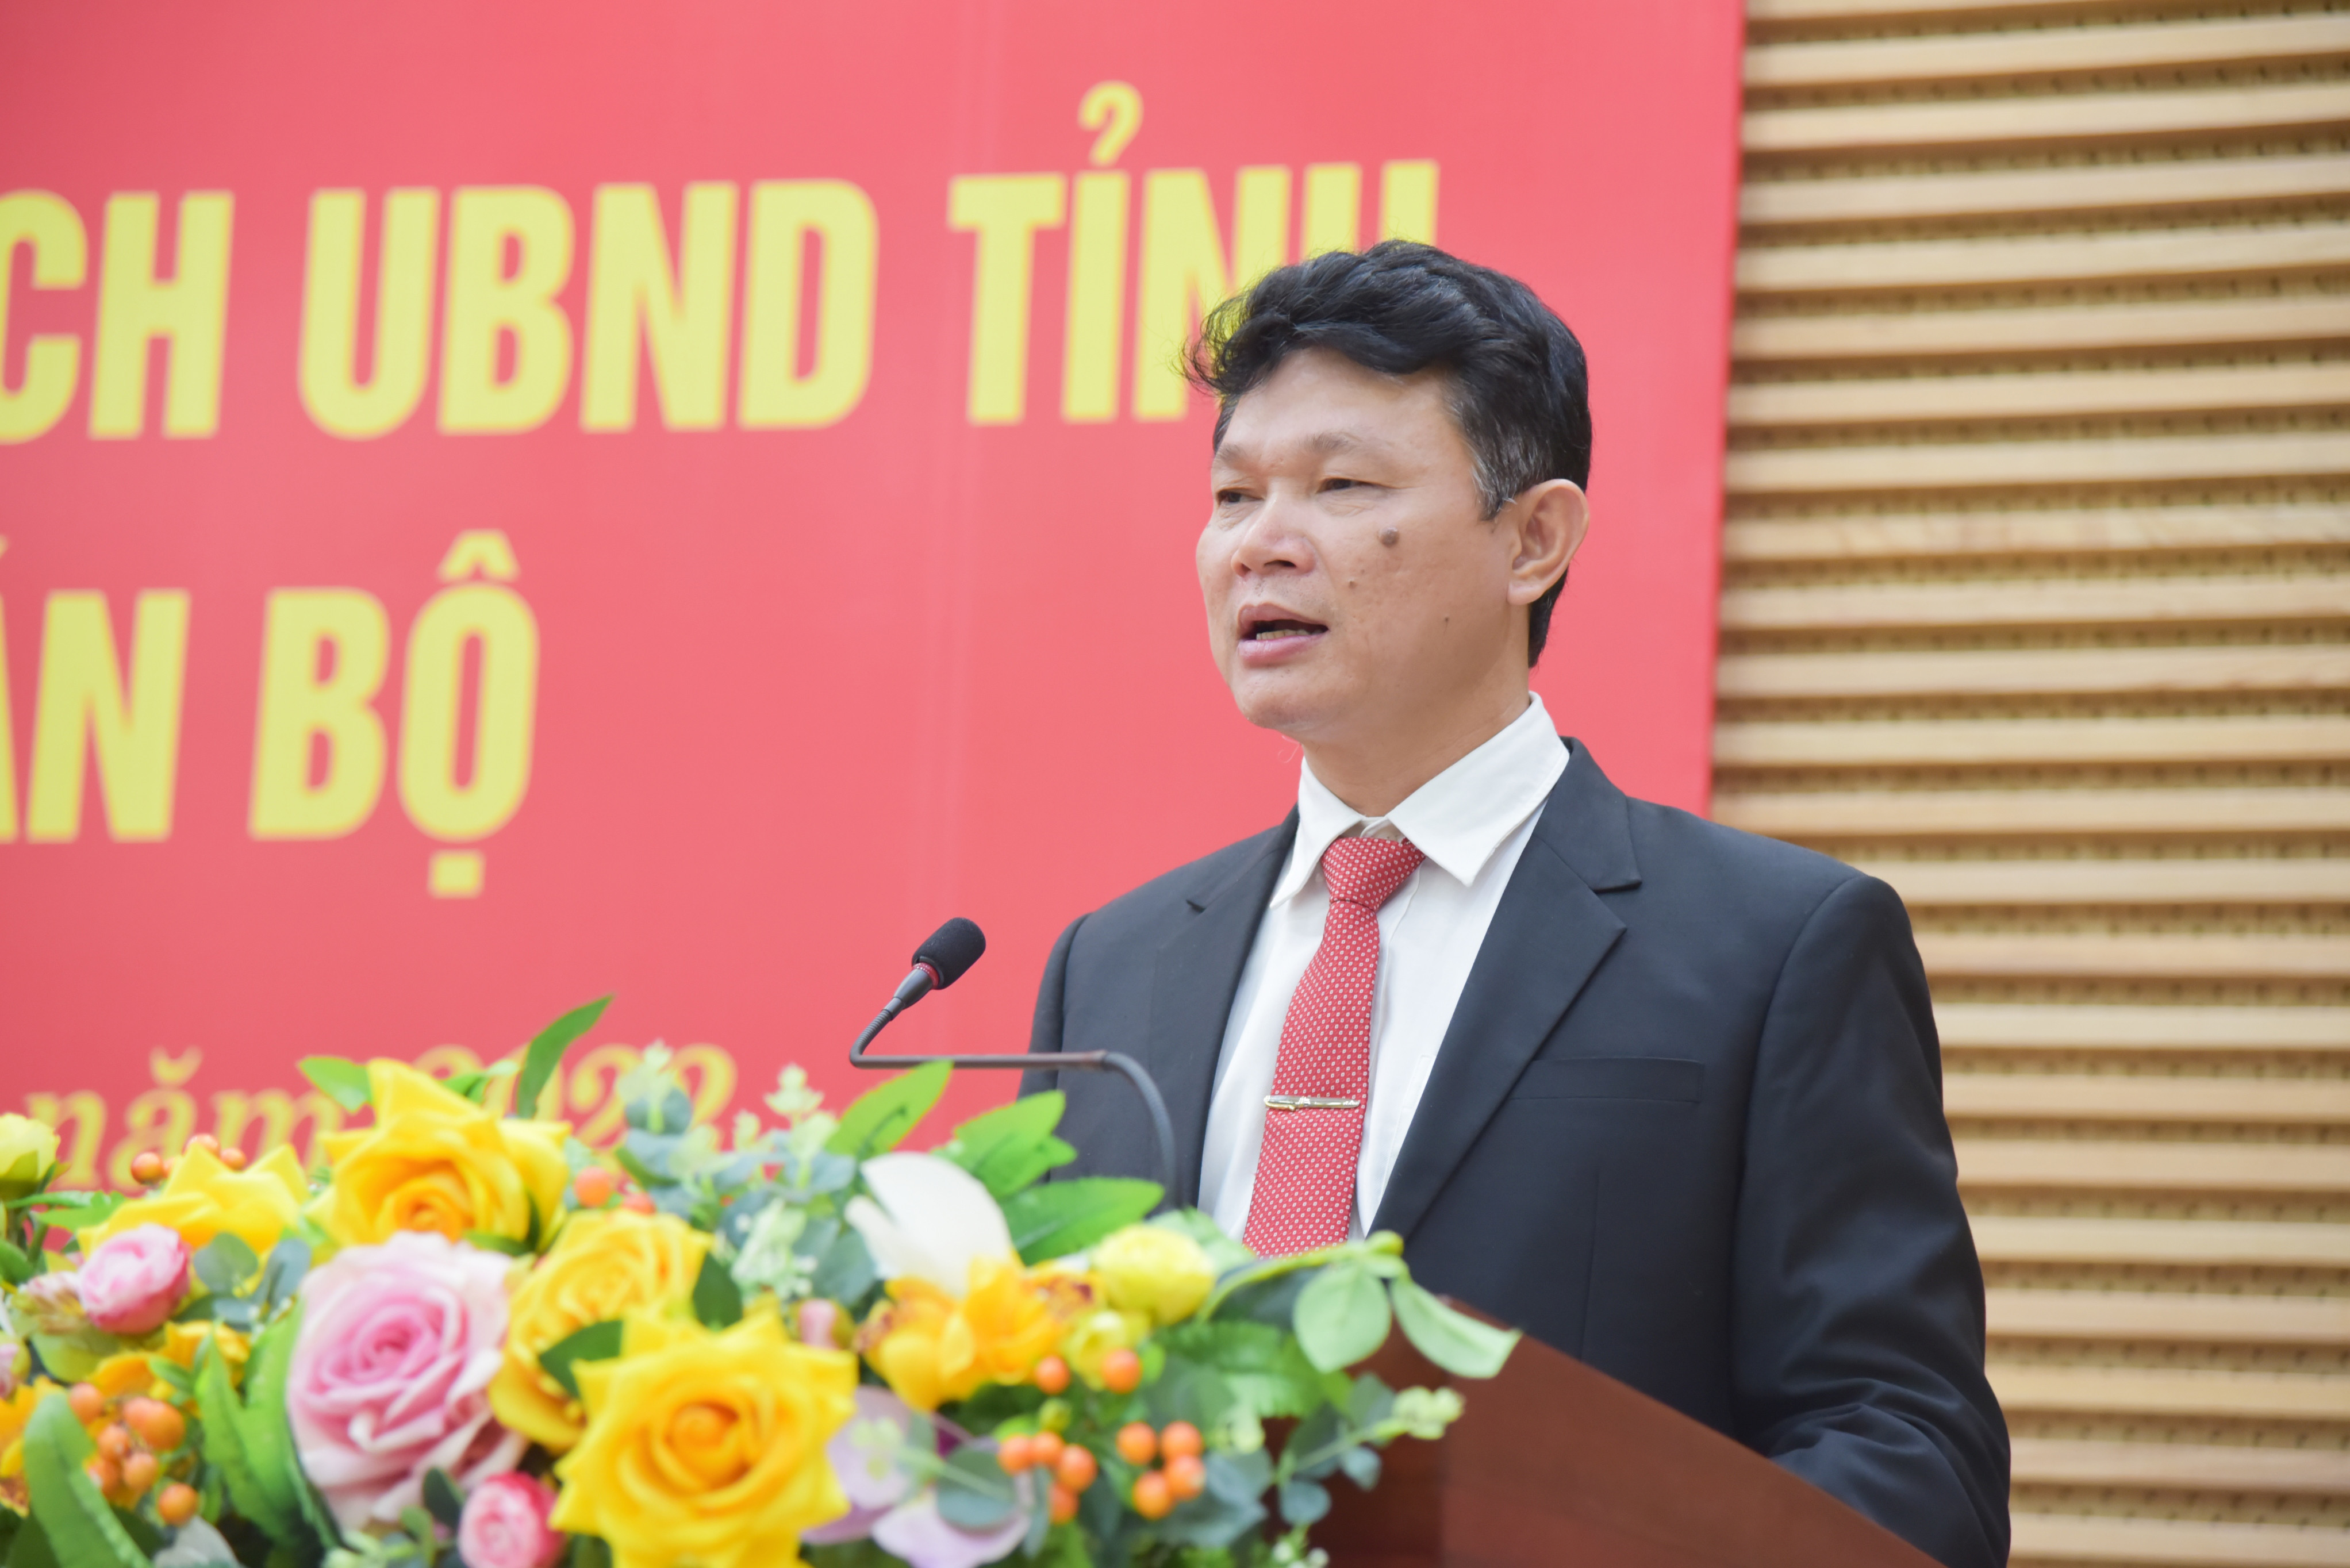 Đồng chí Phan Văn Bình - Phó Trưởng Ban khu Kinh tế Đông Nam thay mặt các đồng chí được bổ nhiệm phát biểu nhận nhiệm vụ. Ảnh: Thanh Lê